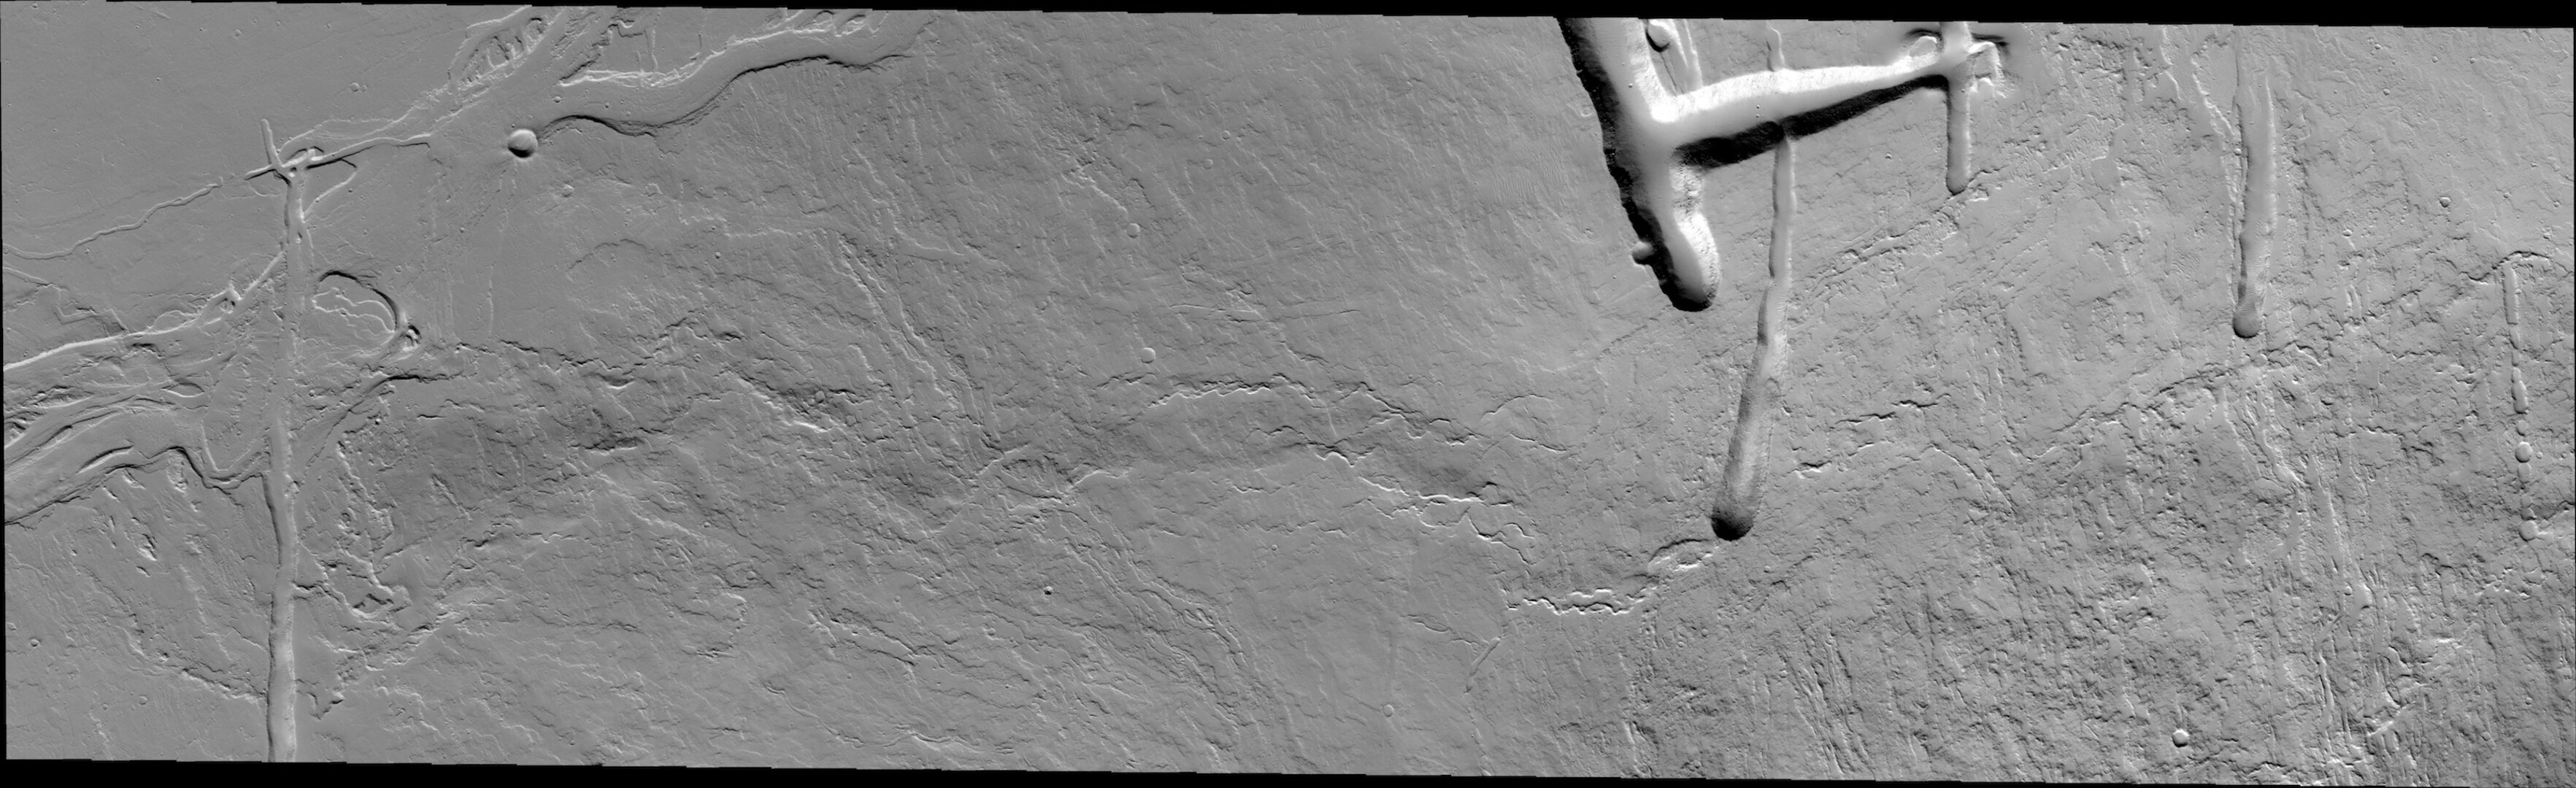 Eastern flank of Olympus Mons